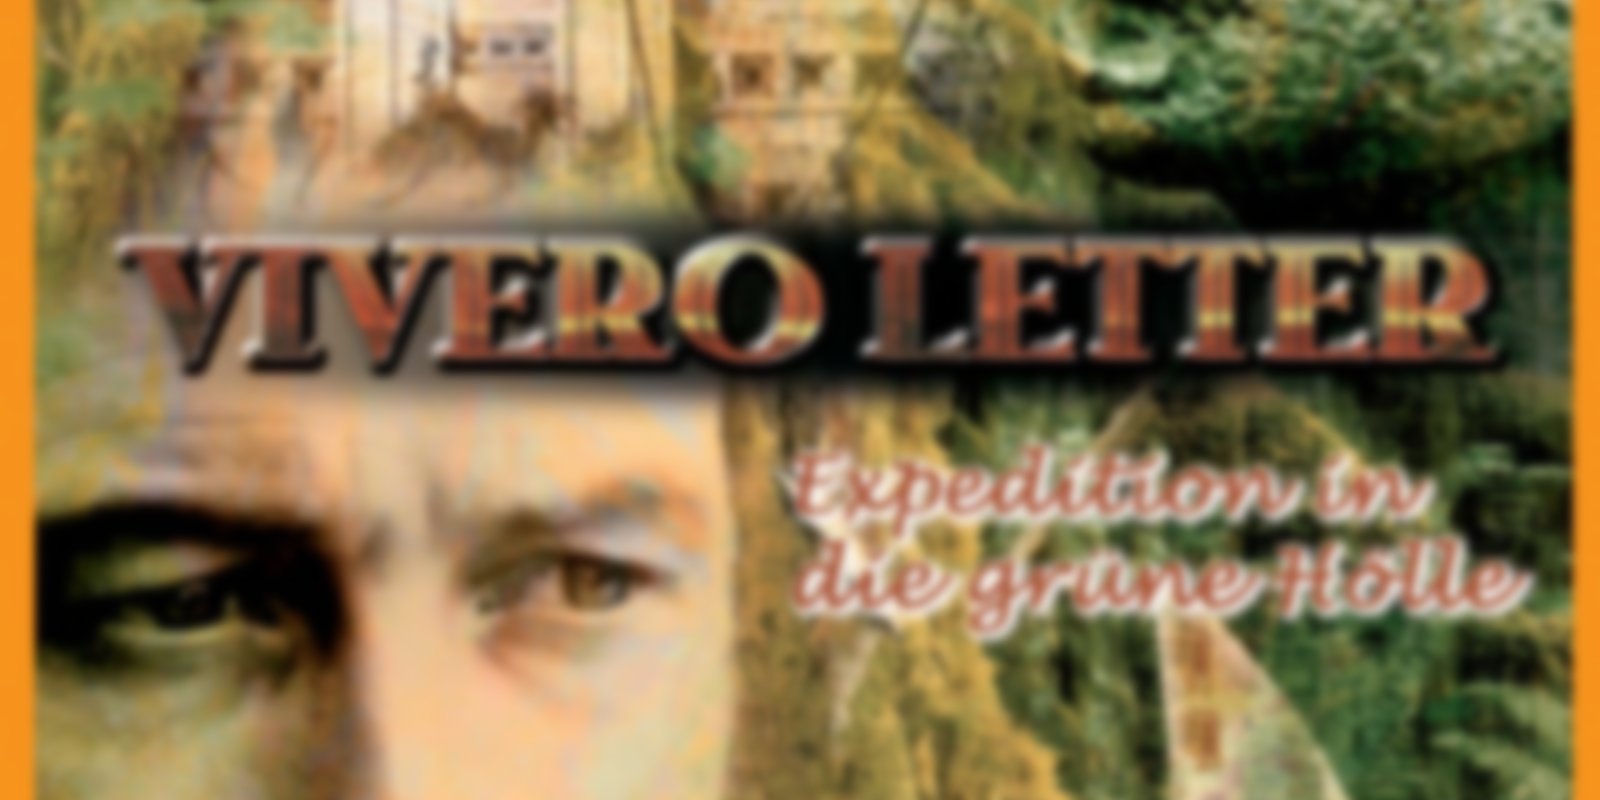 Vivero Letter - Der Fluch des Schatzes